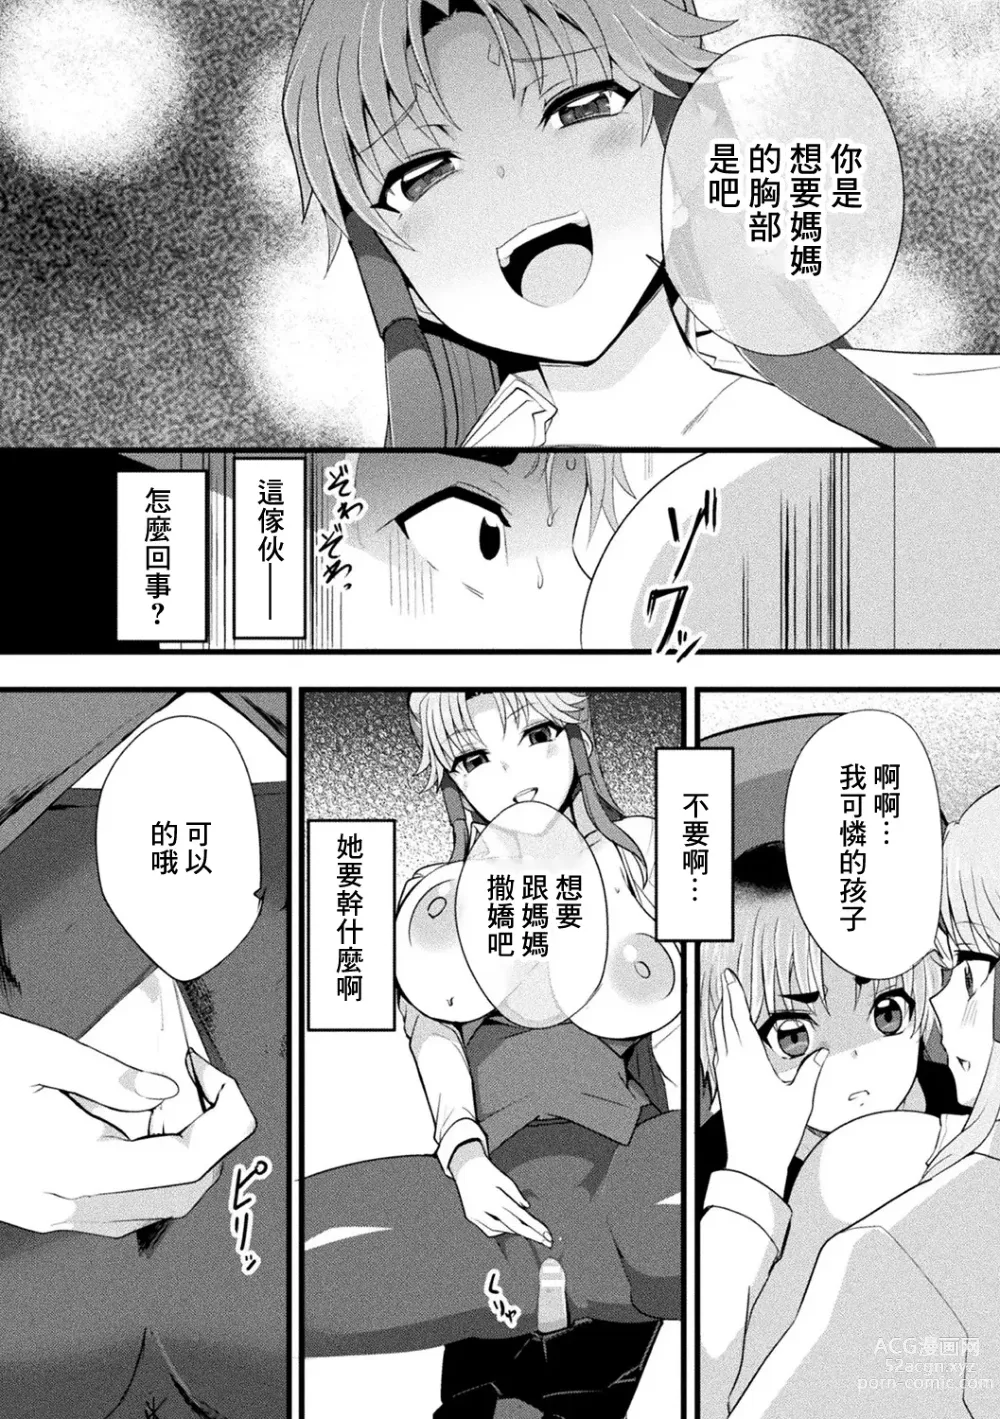 Page 10 of manga Mama Doko Doko - Mom! Where are you?